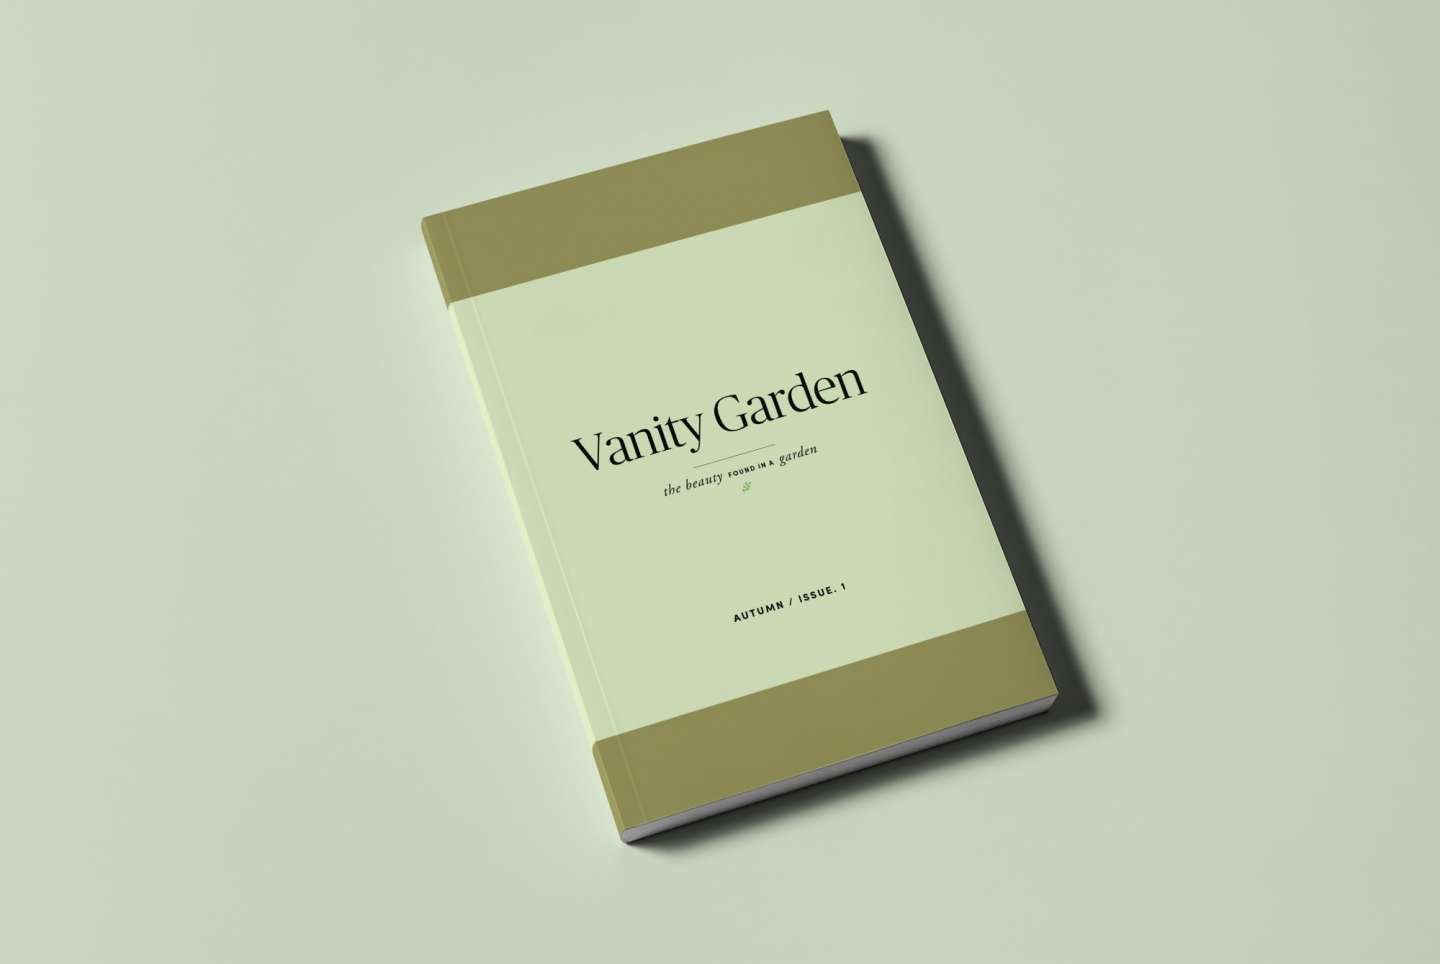 Vanity Garden